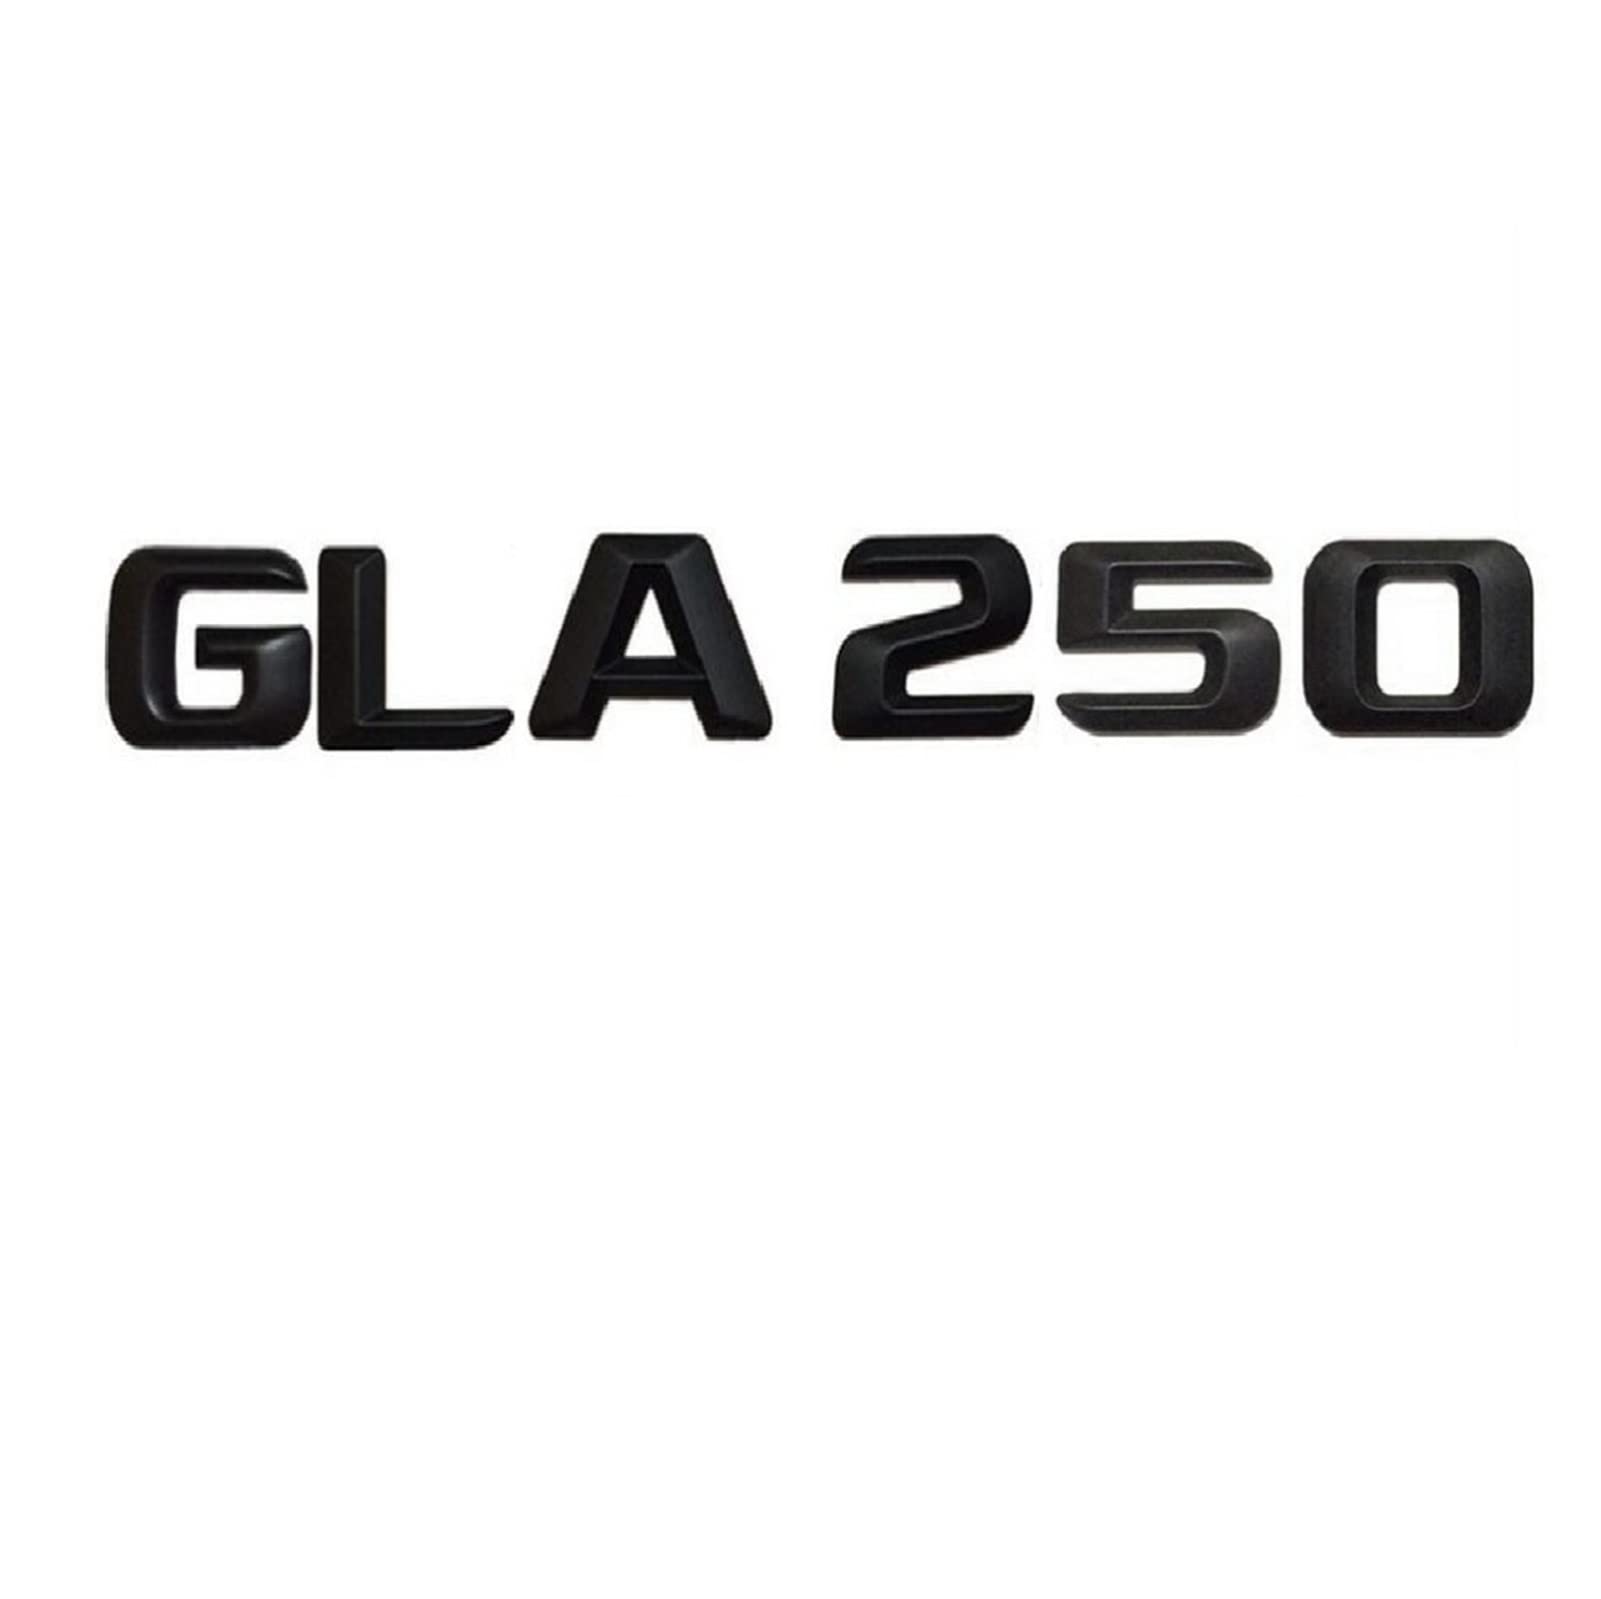 BMINO Mattschwarz ABS GLA 250" Auto-Kofferraum-Hinterbuchstaben Wörter Number-Abzeichen Emblem Aufkleber Aufkleber Kompatibel for Mercedes Benz Glasig Klasse GLA250. Logo-Aufkleber von BMINO